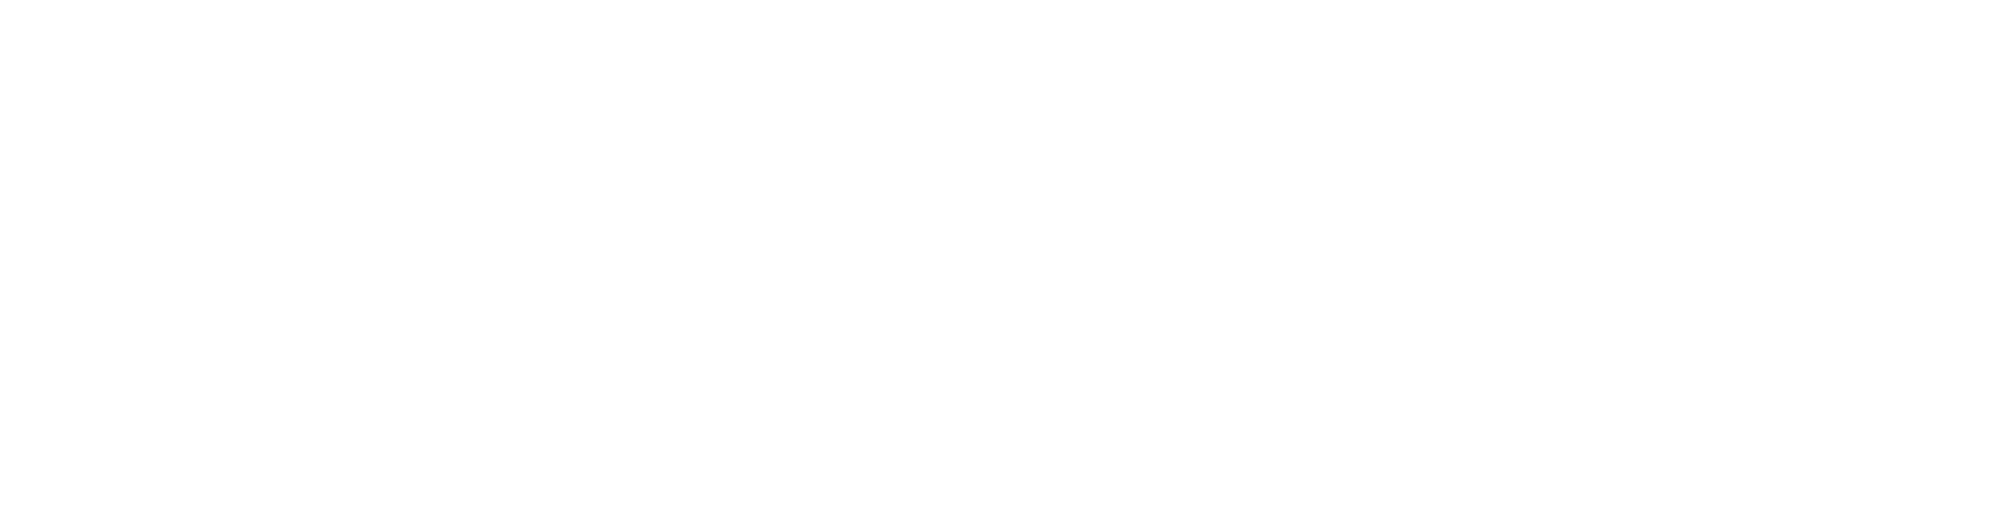 godzone-logo